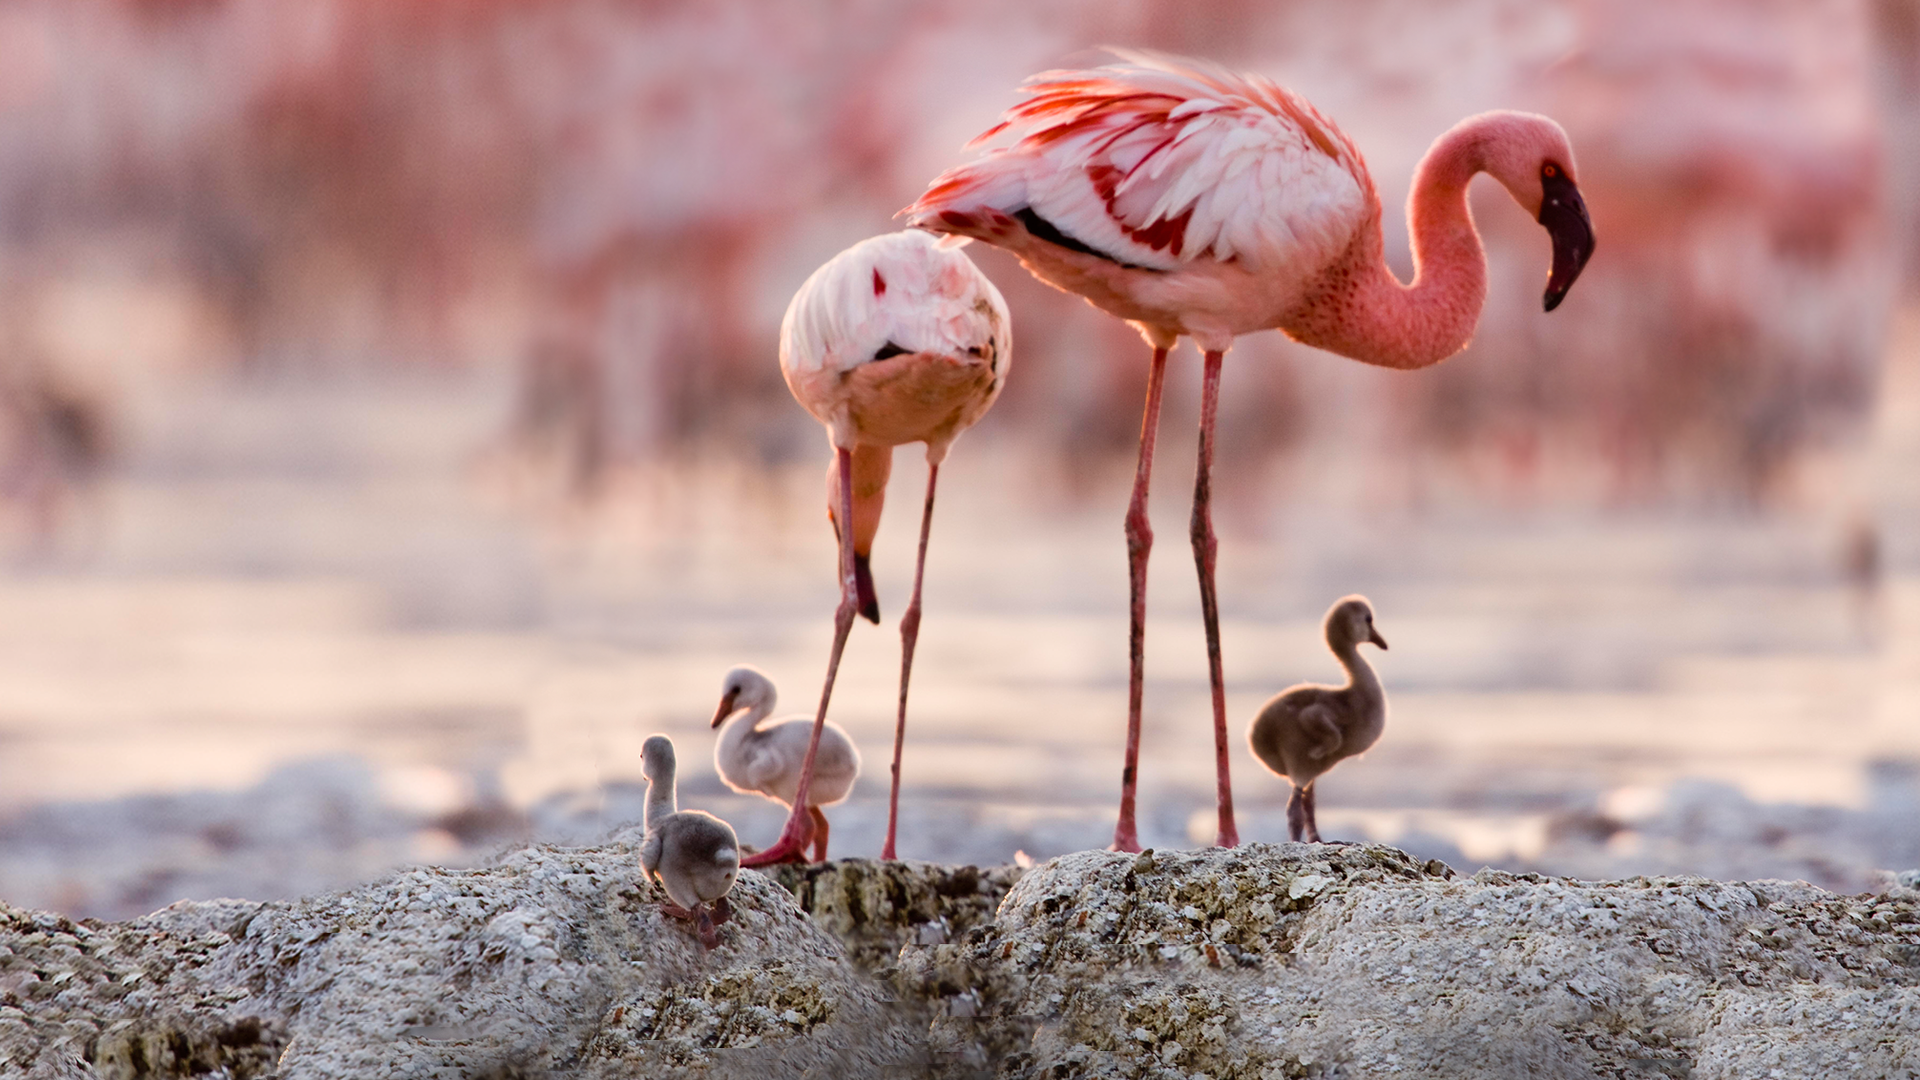 Grande Balé Vermelho - O Mistério dos Flamingos